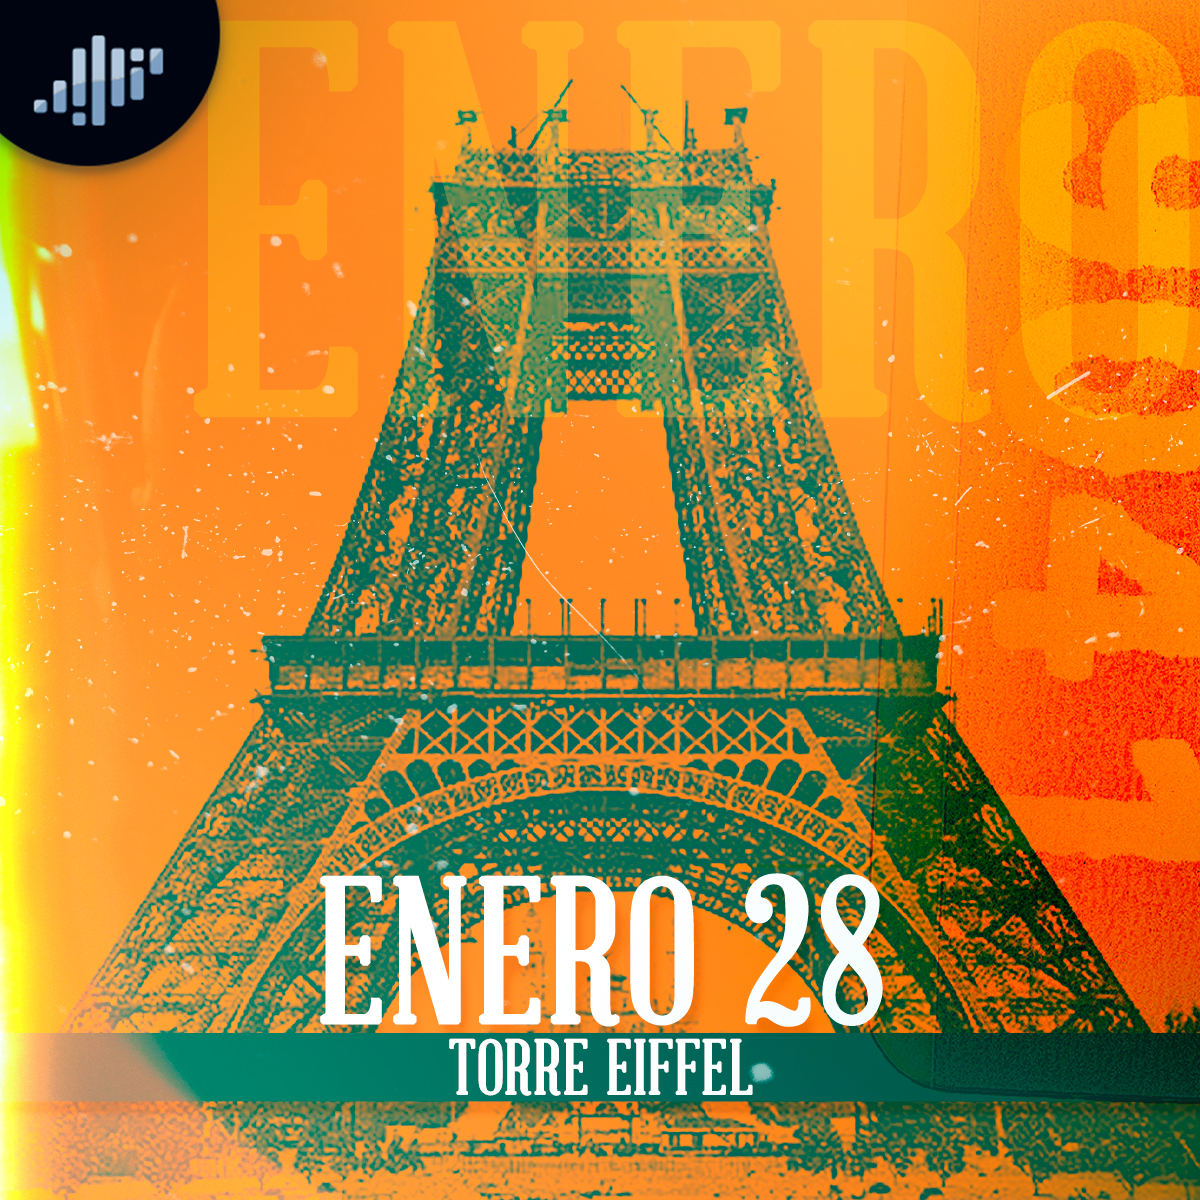 Cuartico de historia | Enero 28 | La Torre Eiffel